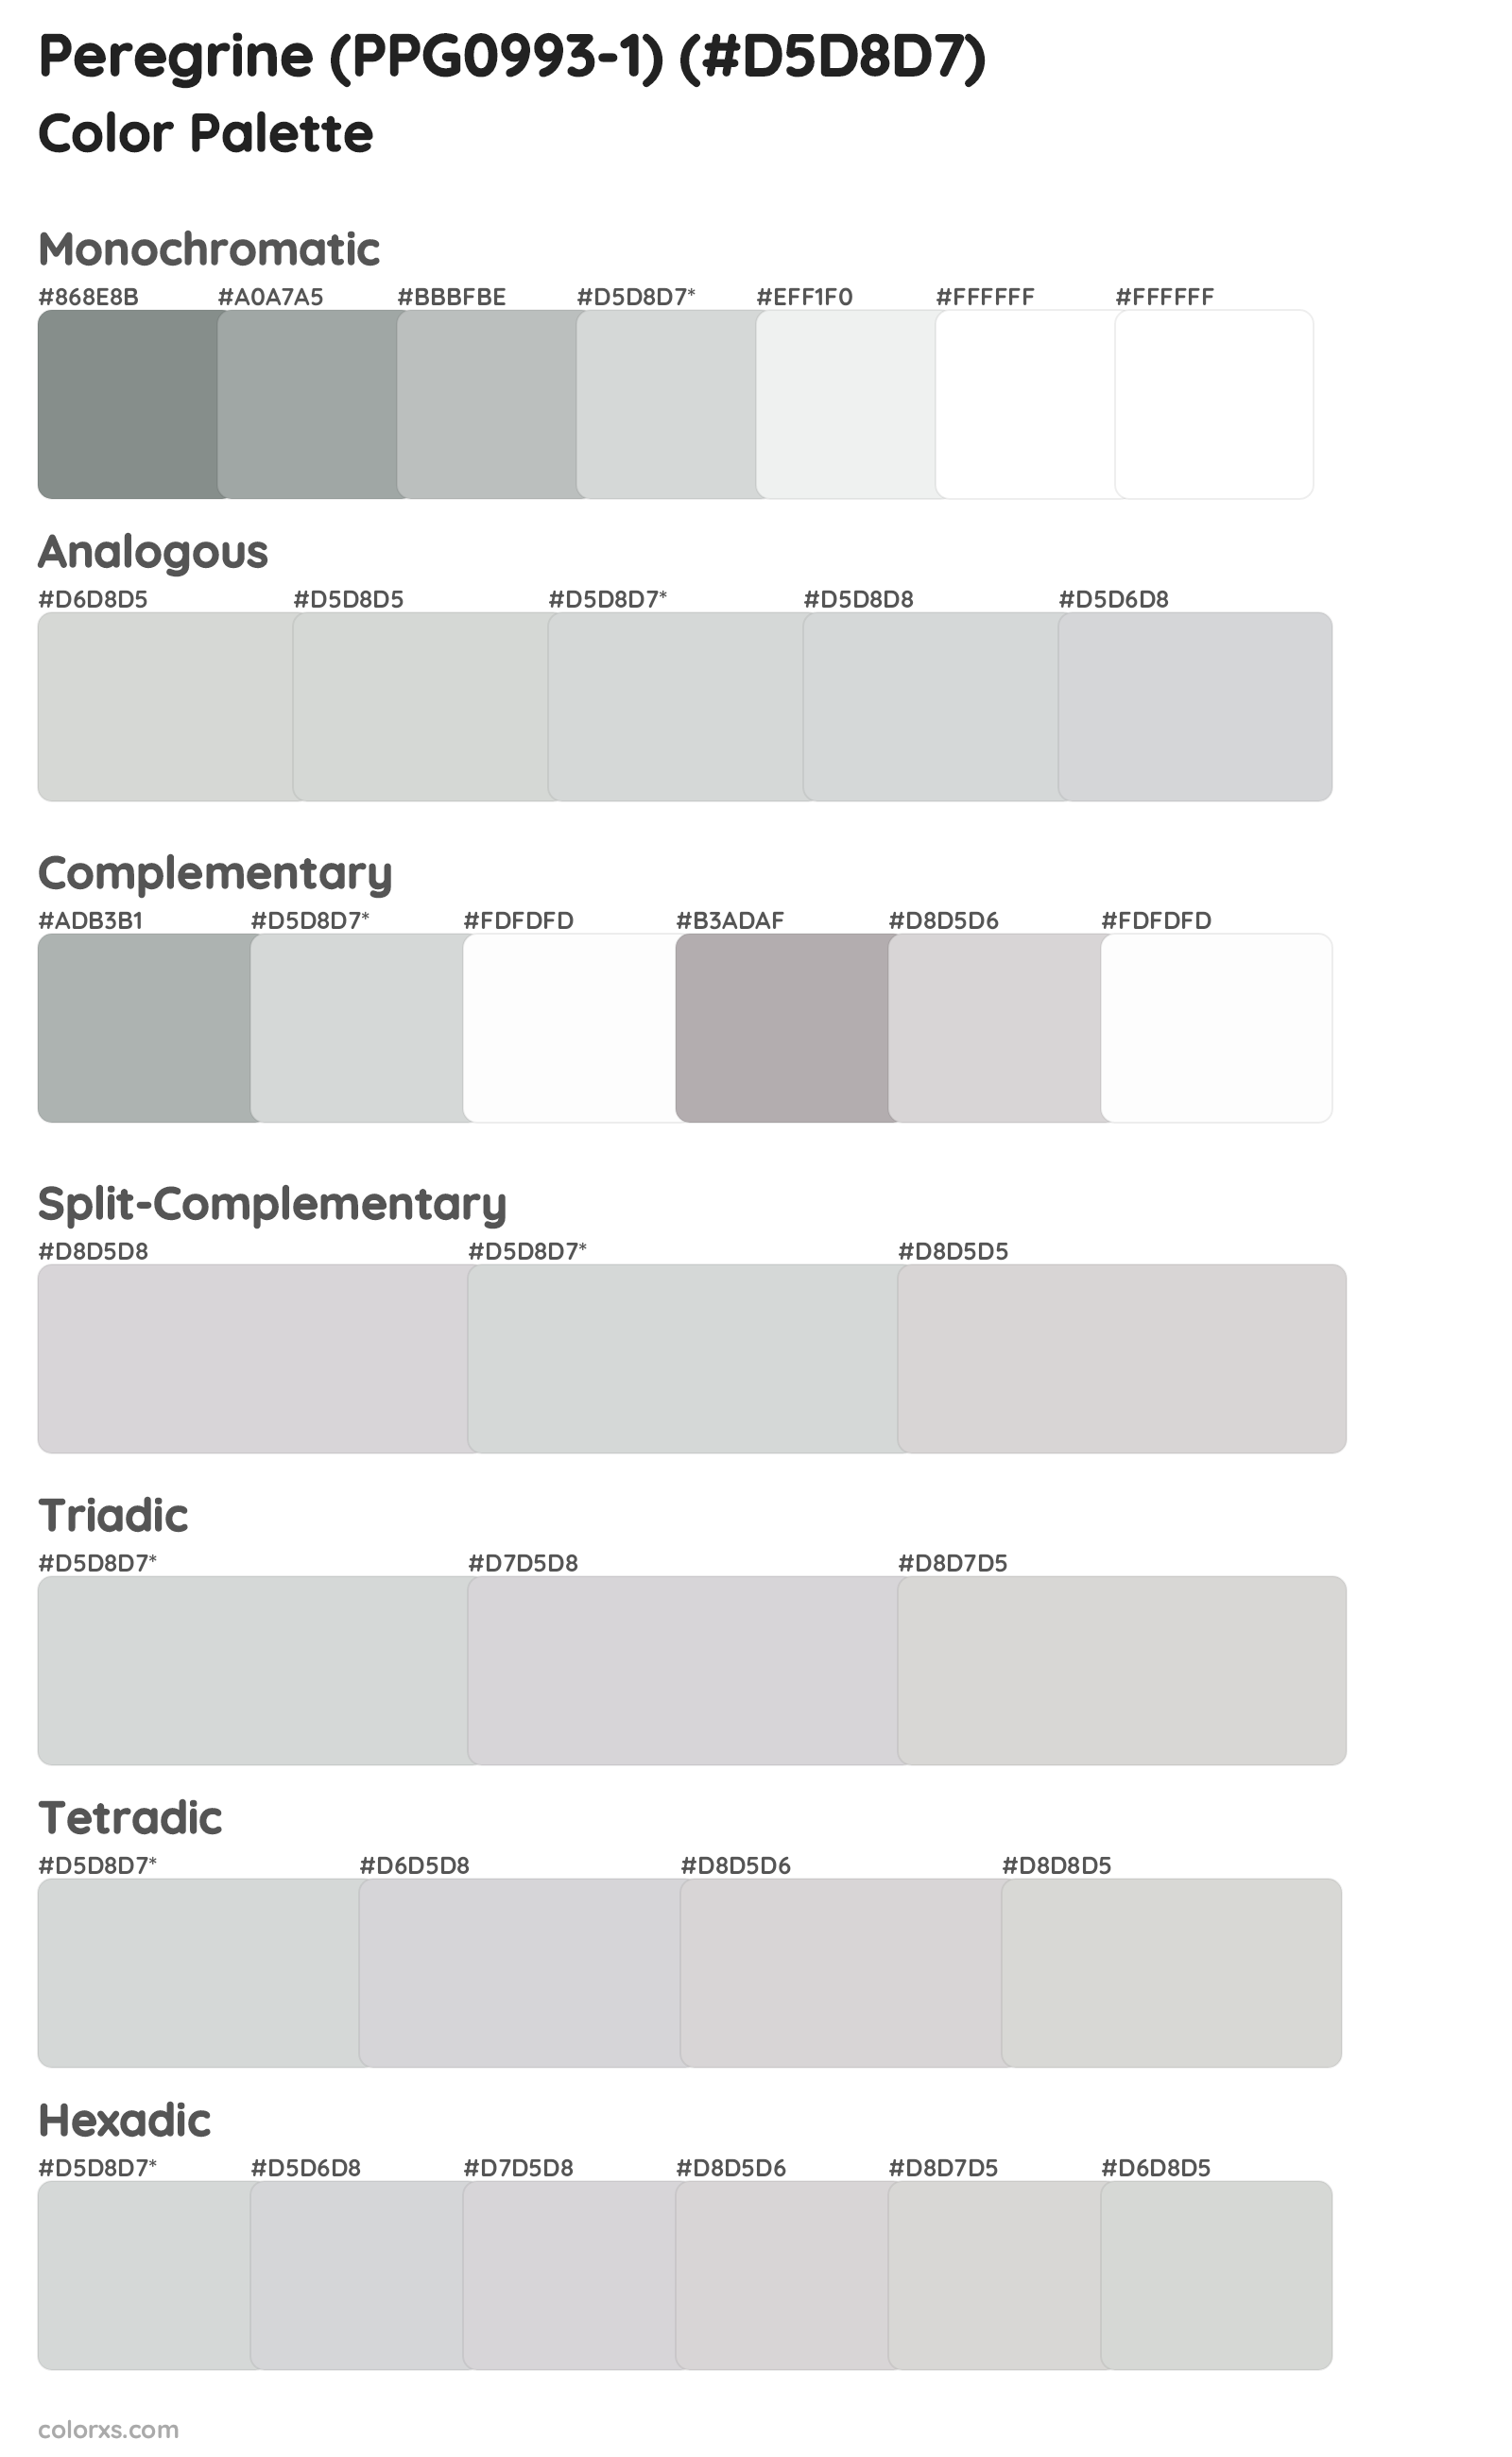 Peregrine (PPG0993-1) Color Scheme Palettes